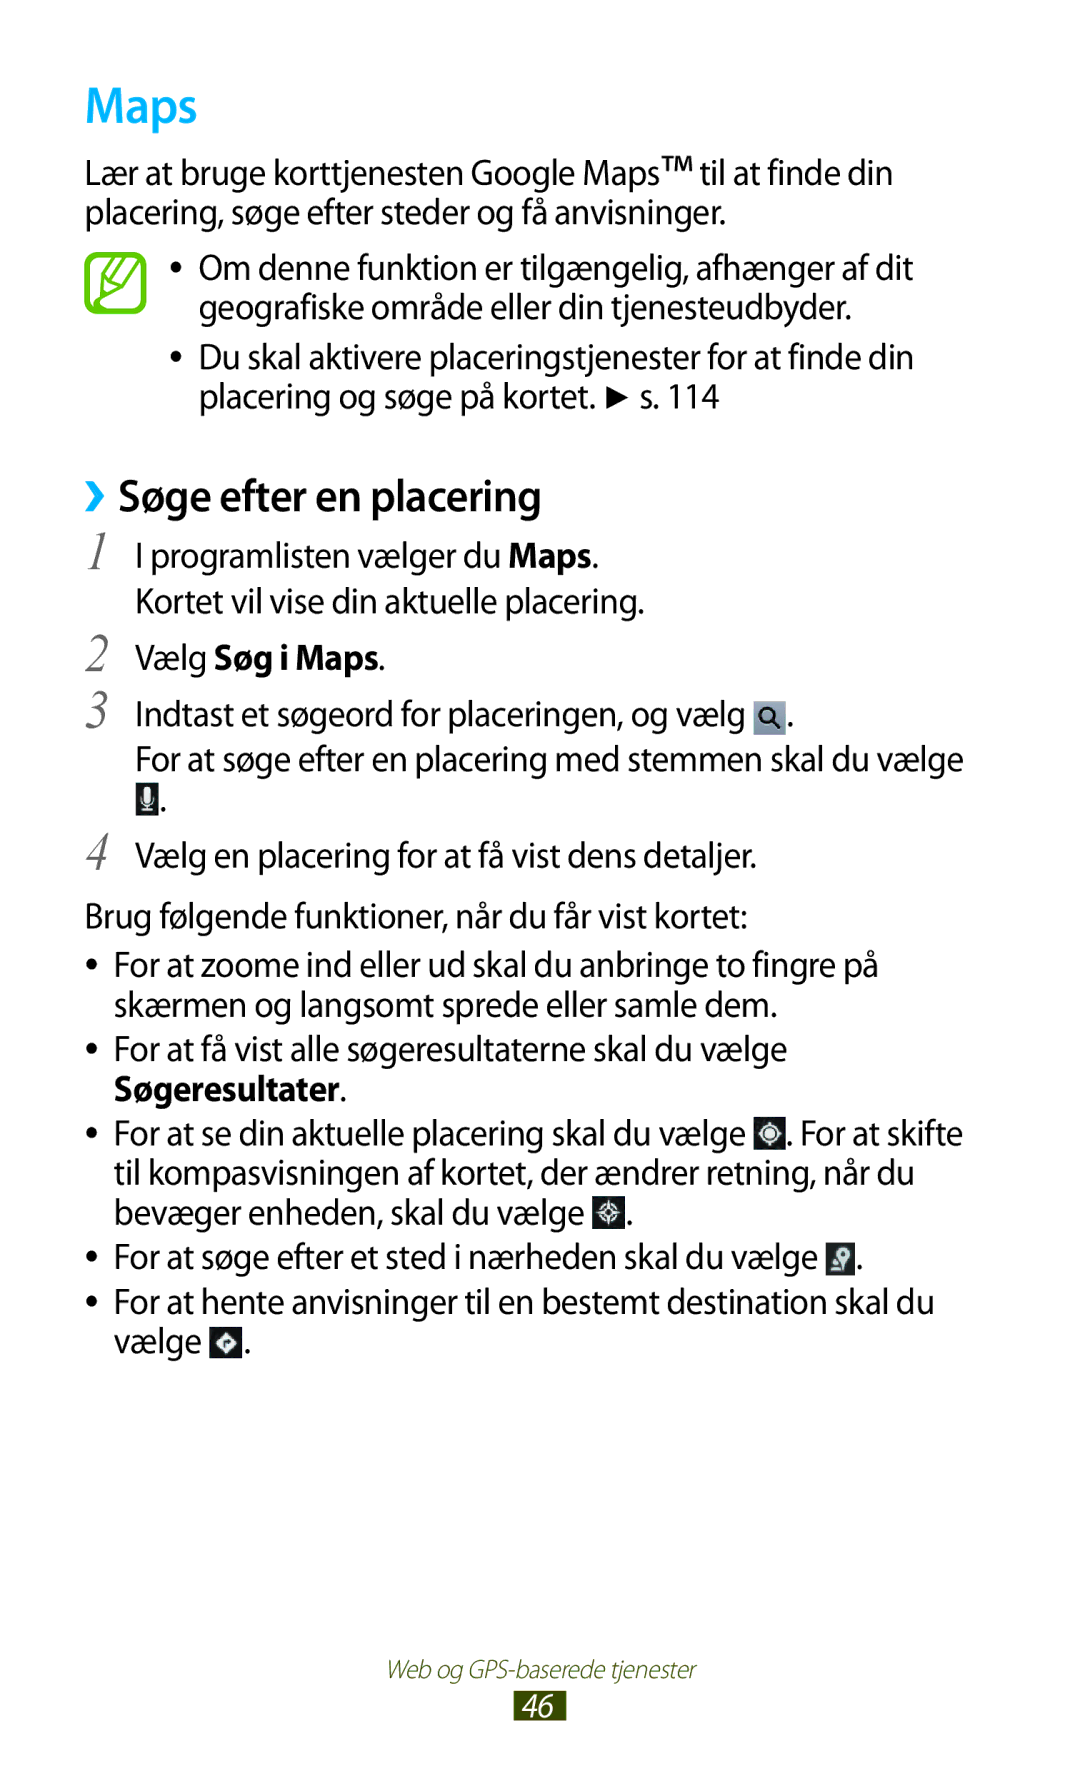 Samsung GT-P5100TSANEE, GT-P5100GRANEE, GT-P5100ZWANEE, GT-P5100ZWENEE manual ››Søge efter en placering, Vælg Søg i Maps 